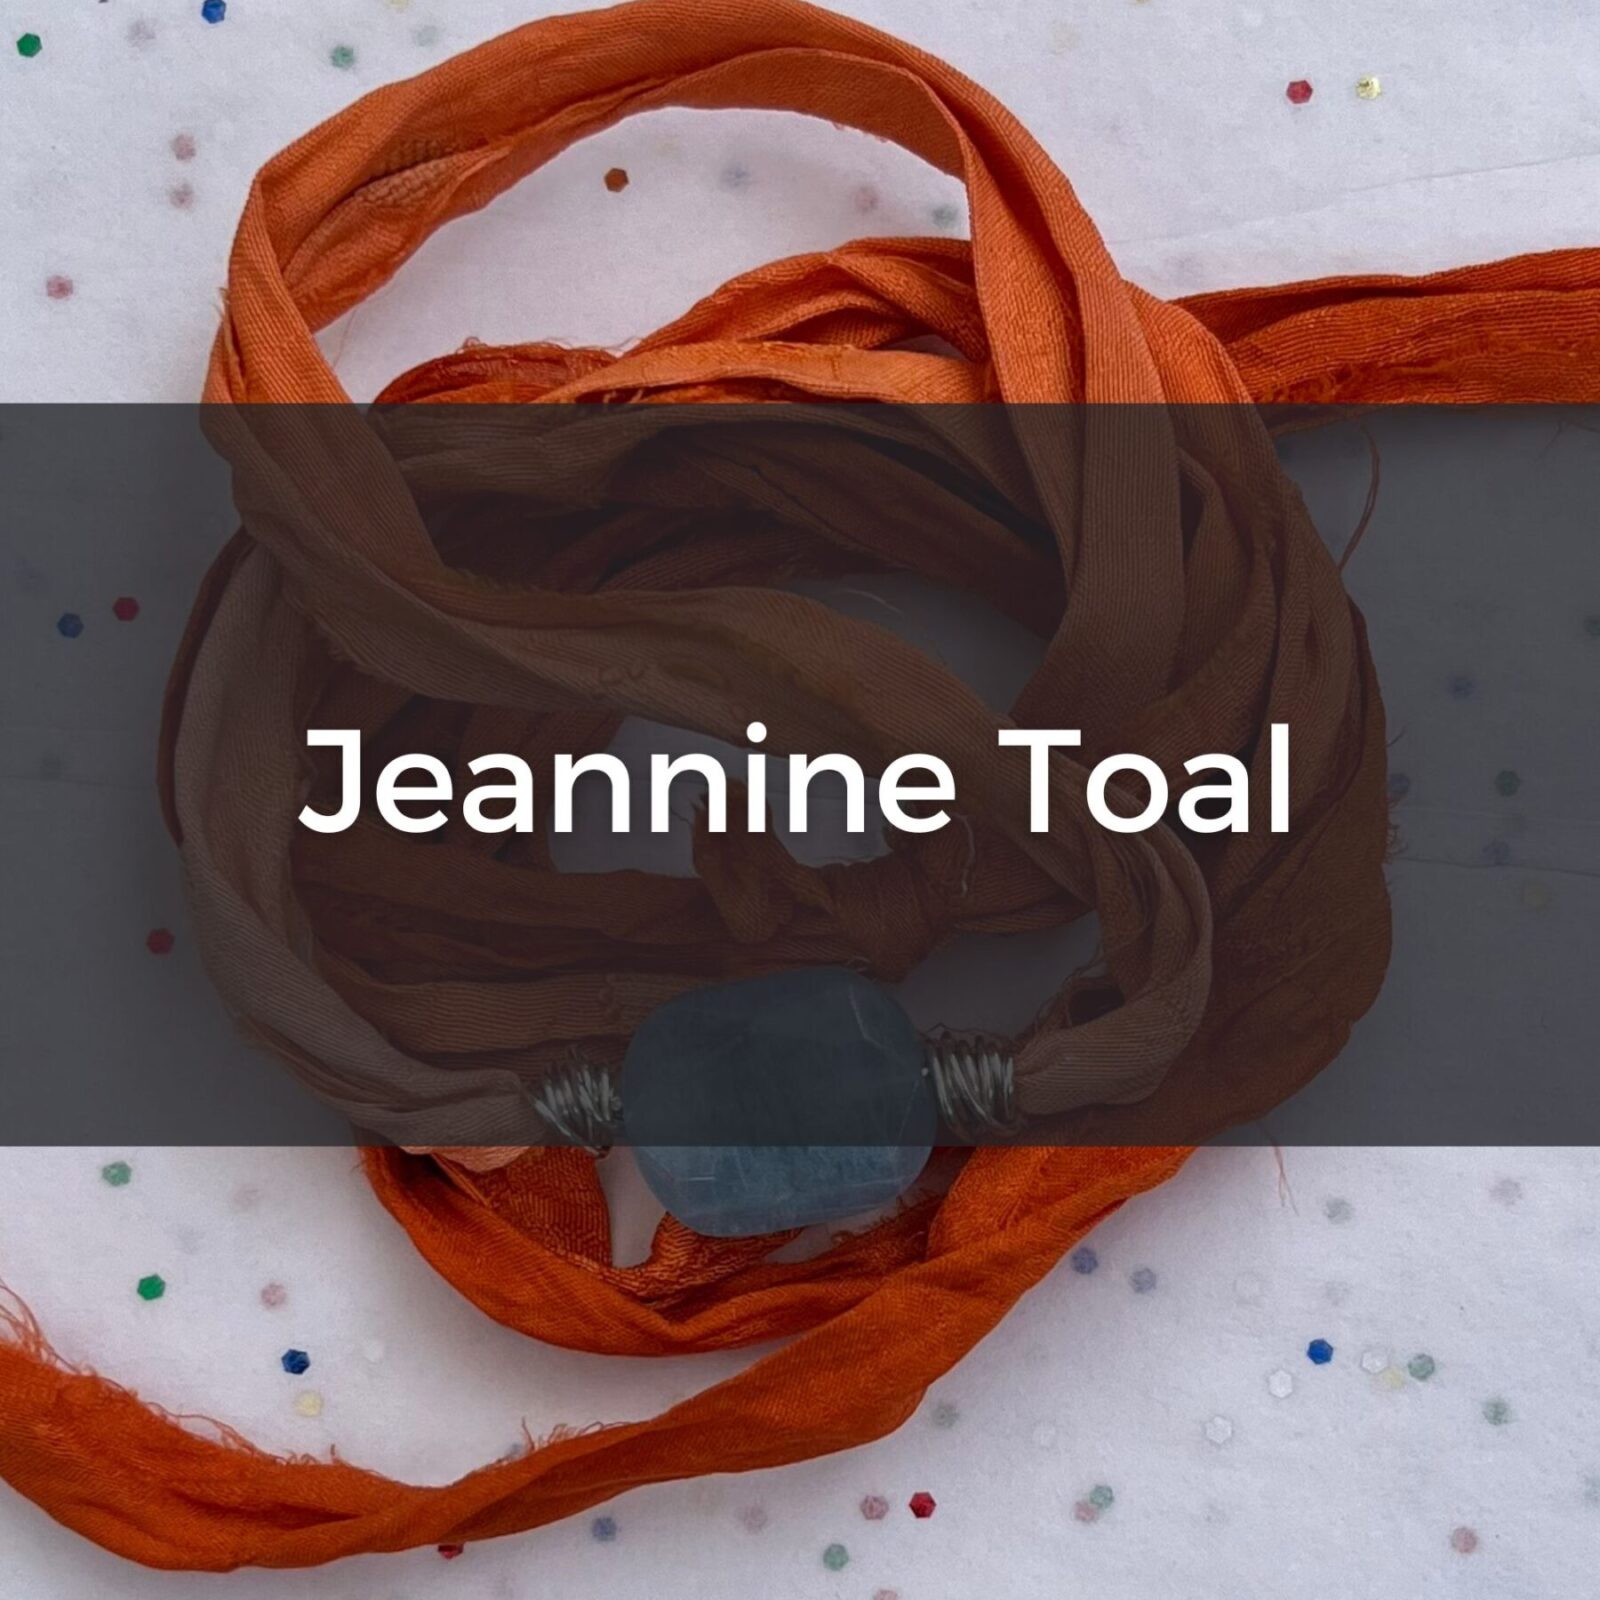 Jeannine Toal, jewelry